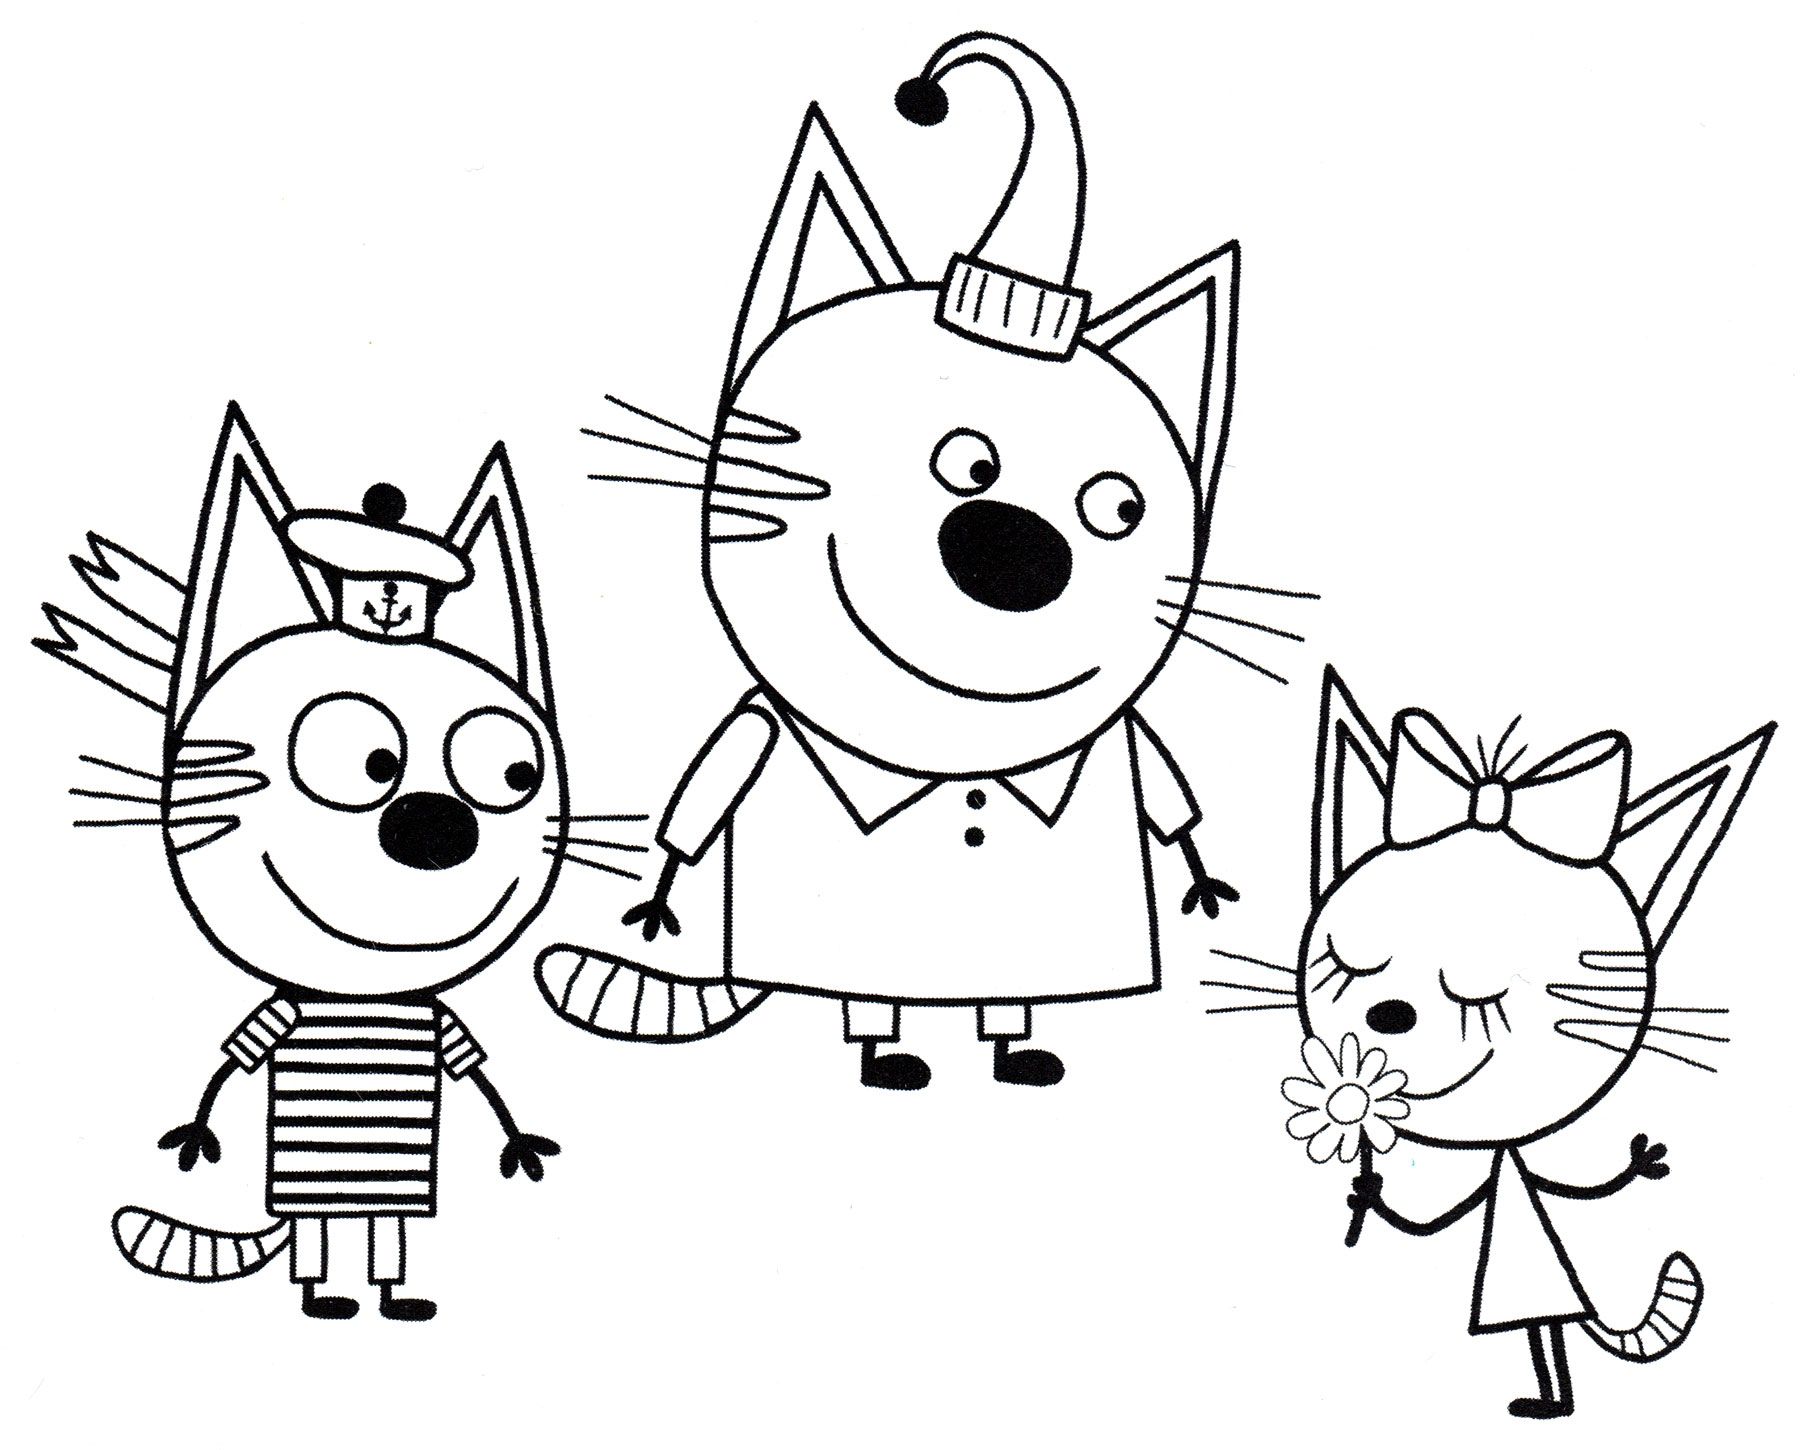 Three cats cartoon #3